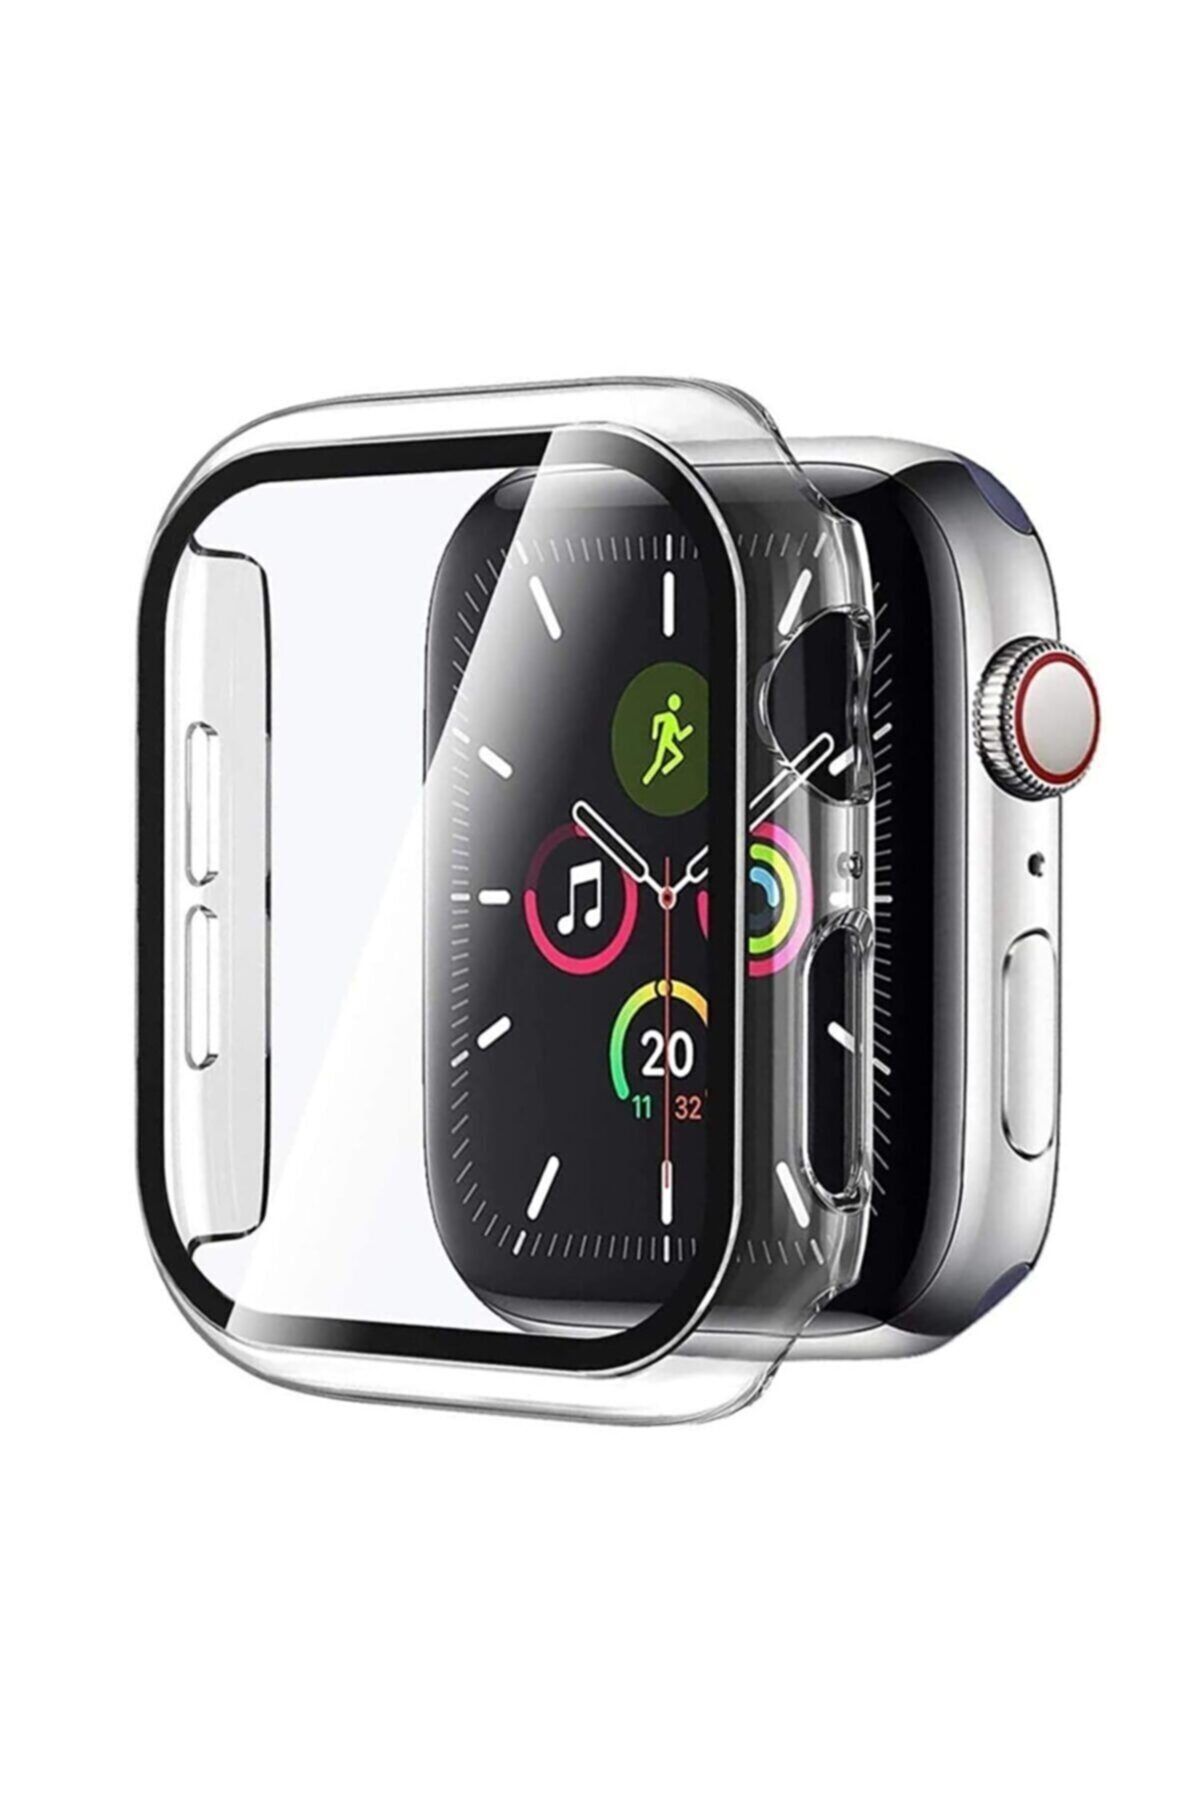 Fibaks Apple Watch 2 3 4 5 6 Se Nike 40mm Kılıf Kasa Ve Ekran Koruyucu 360 Tam Koruma Kapak